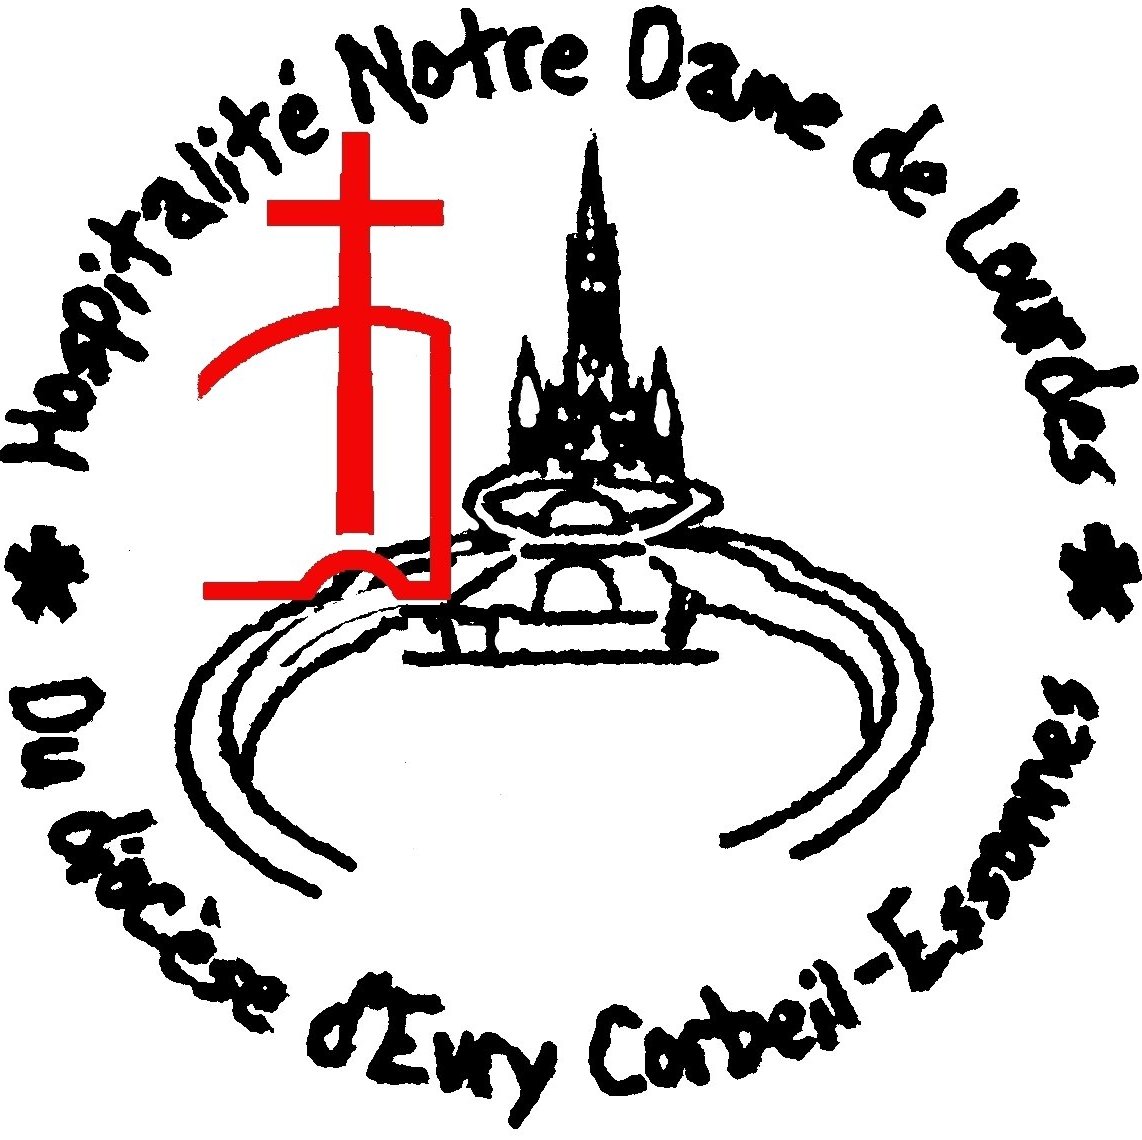 Association diocésaine en #essonne notre Hospitalité emmène chaque année en avril des pèlerins valides ou en difficulté à #Lourdes. Suivez nous &rejoignez nous!